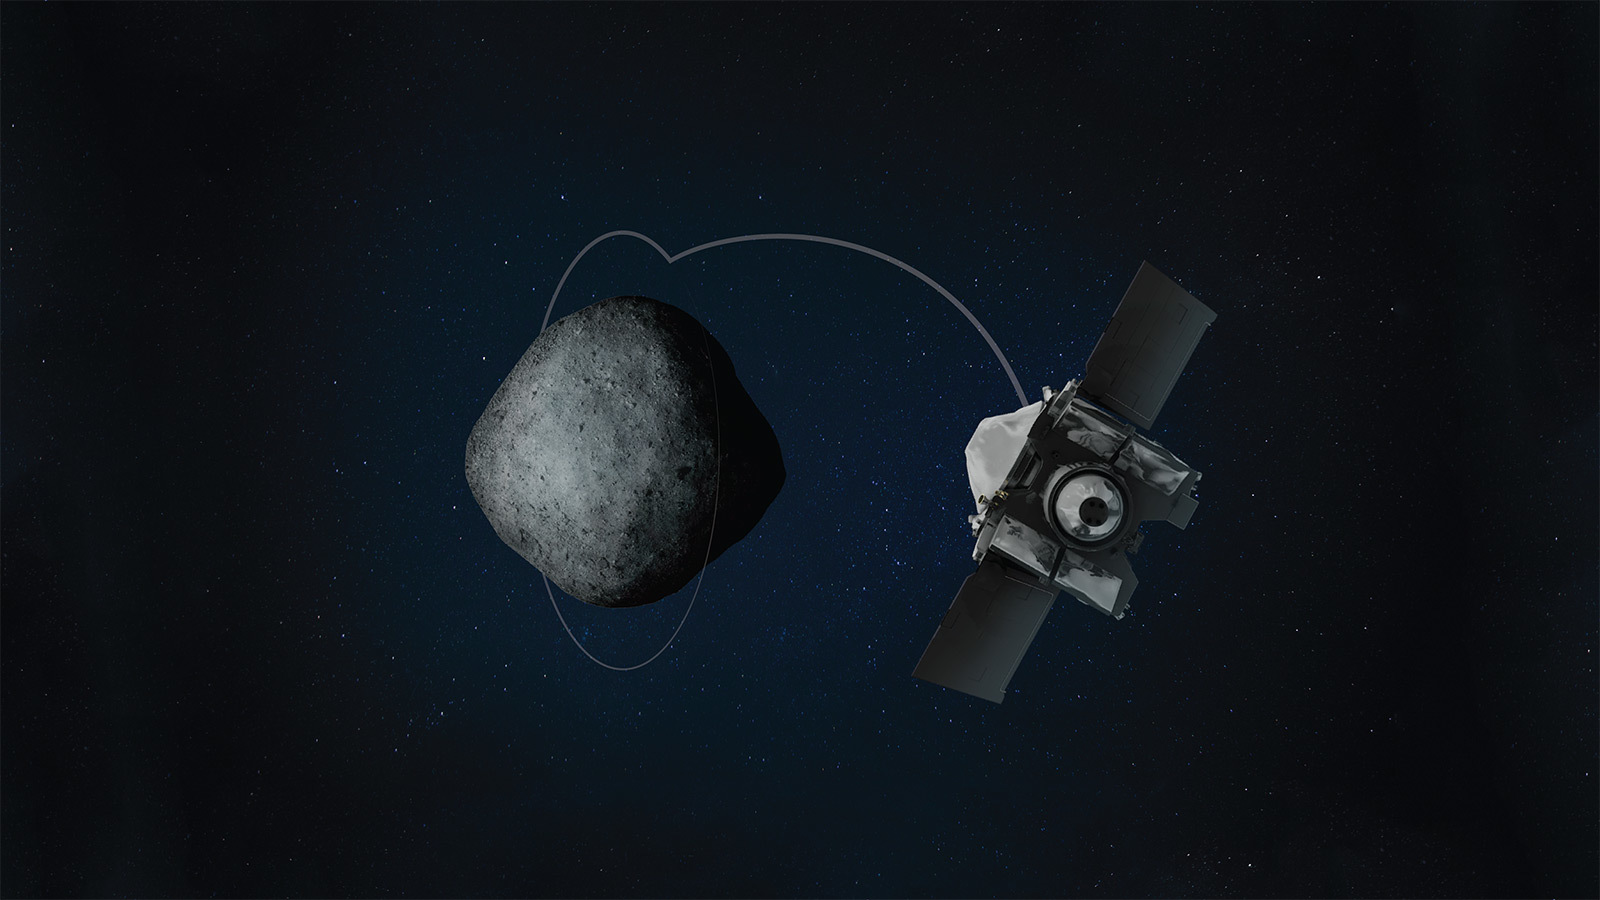 Asteroid Institute